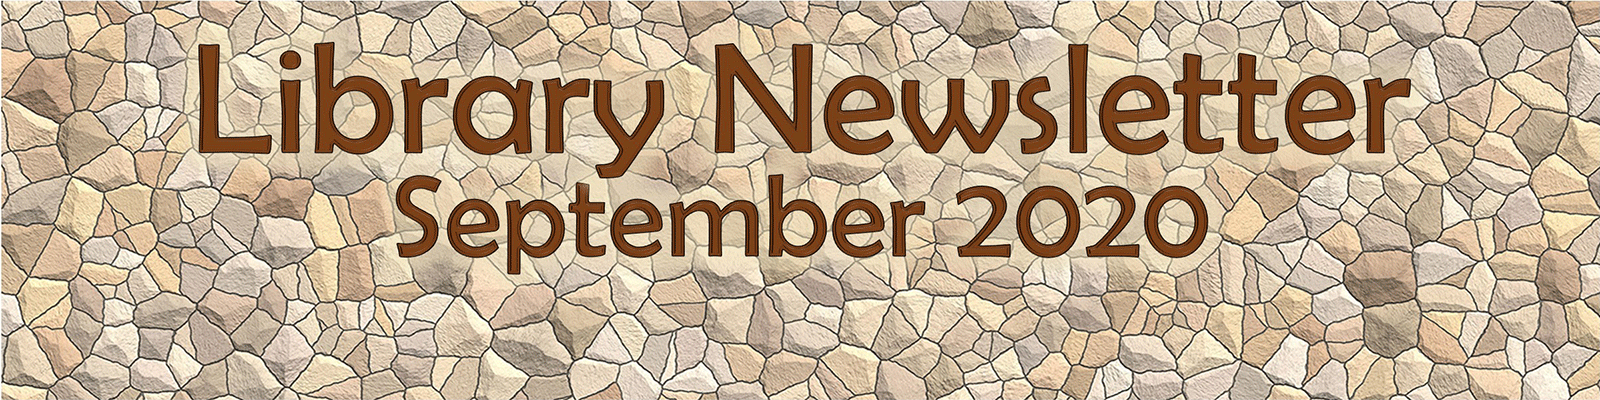 Library Newsletter September 2020 Stones banner